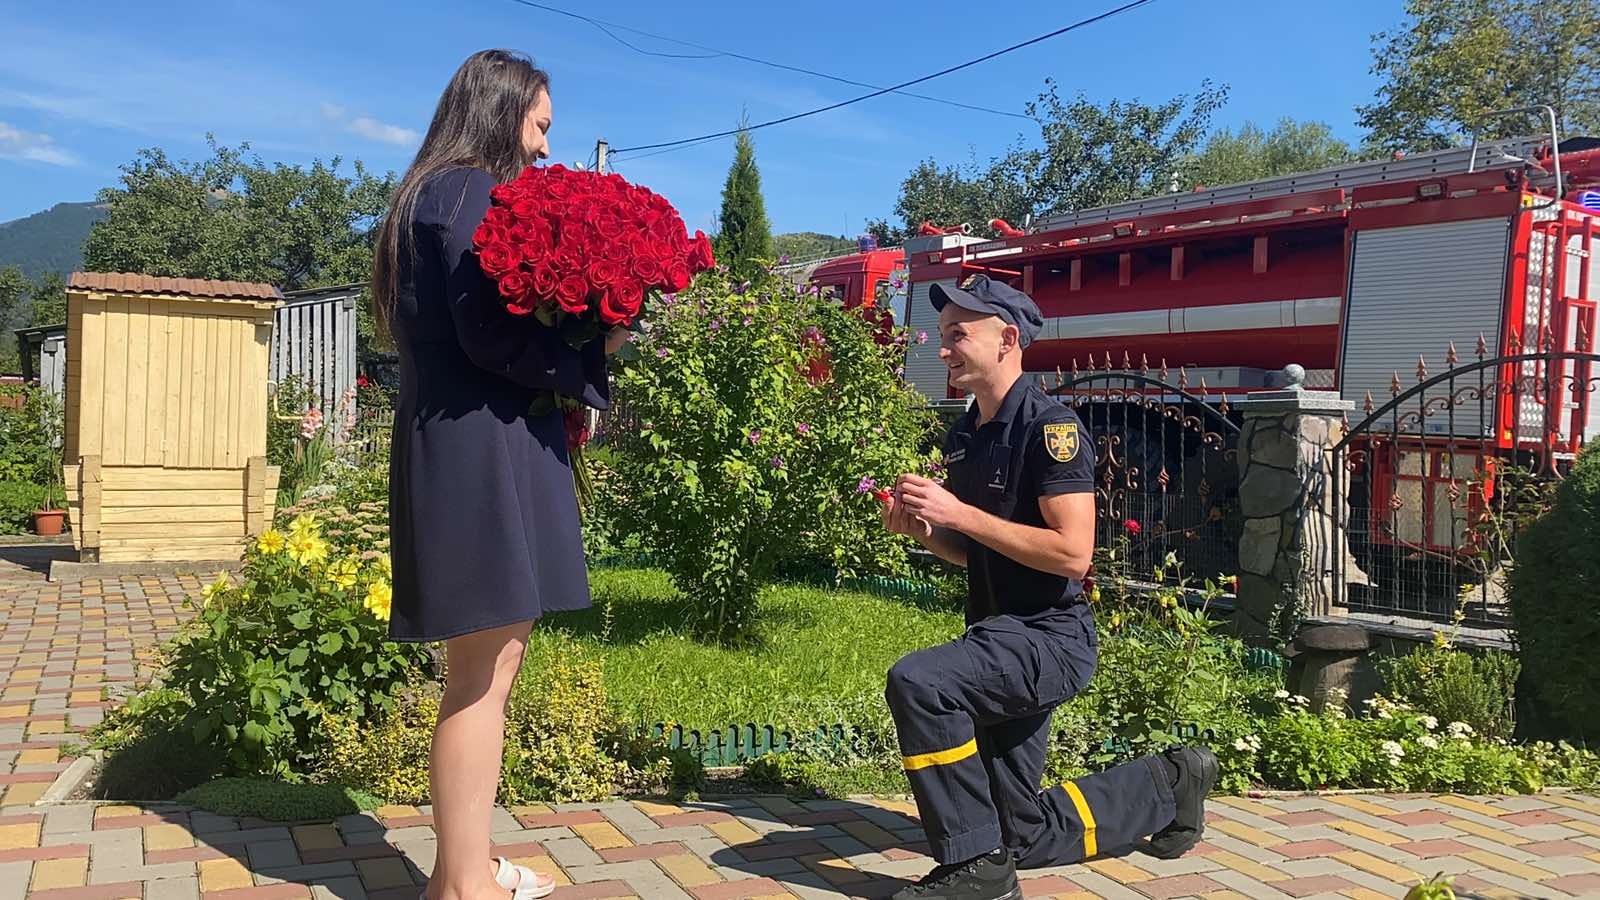 Не лише героїчні, а й романтичні: на Хустщині рятувальник ДСНС освідчився коханій під завивання сирени пожежного автомобіля (ФОТО)